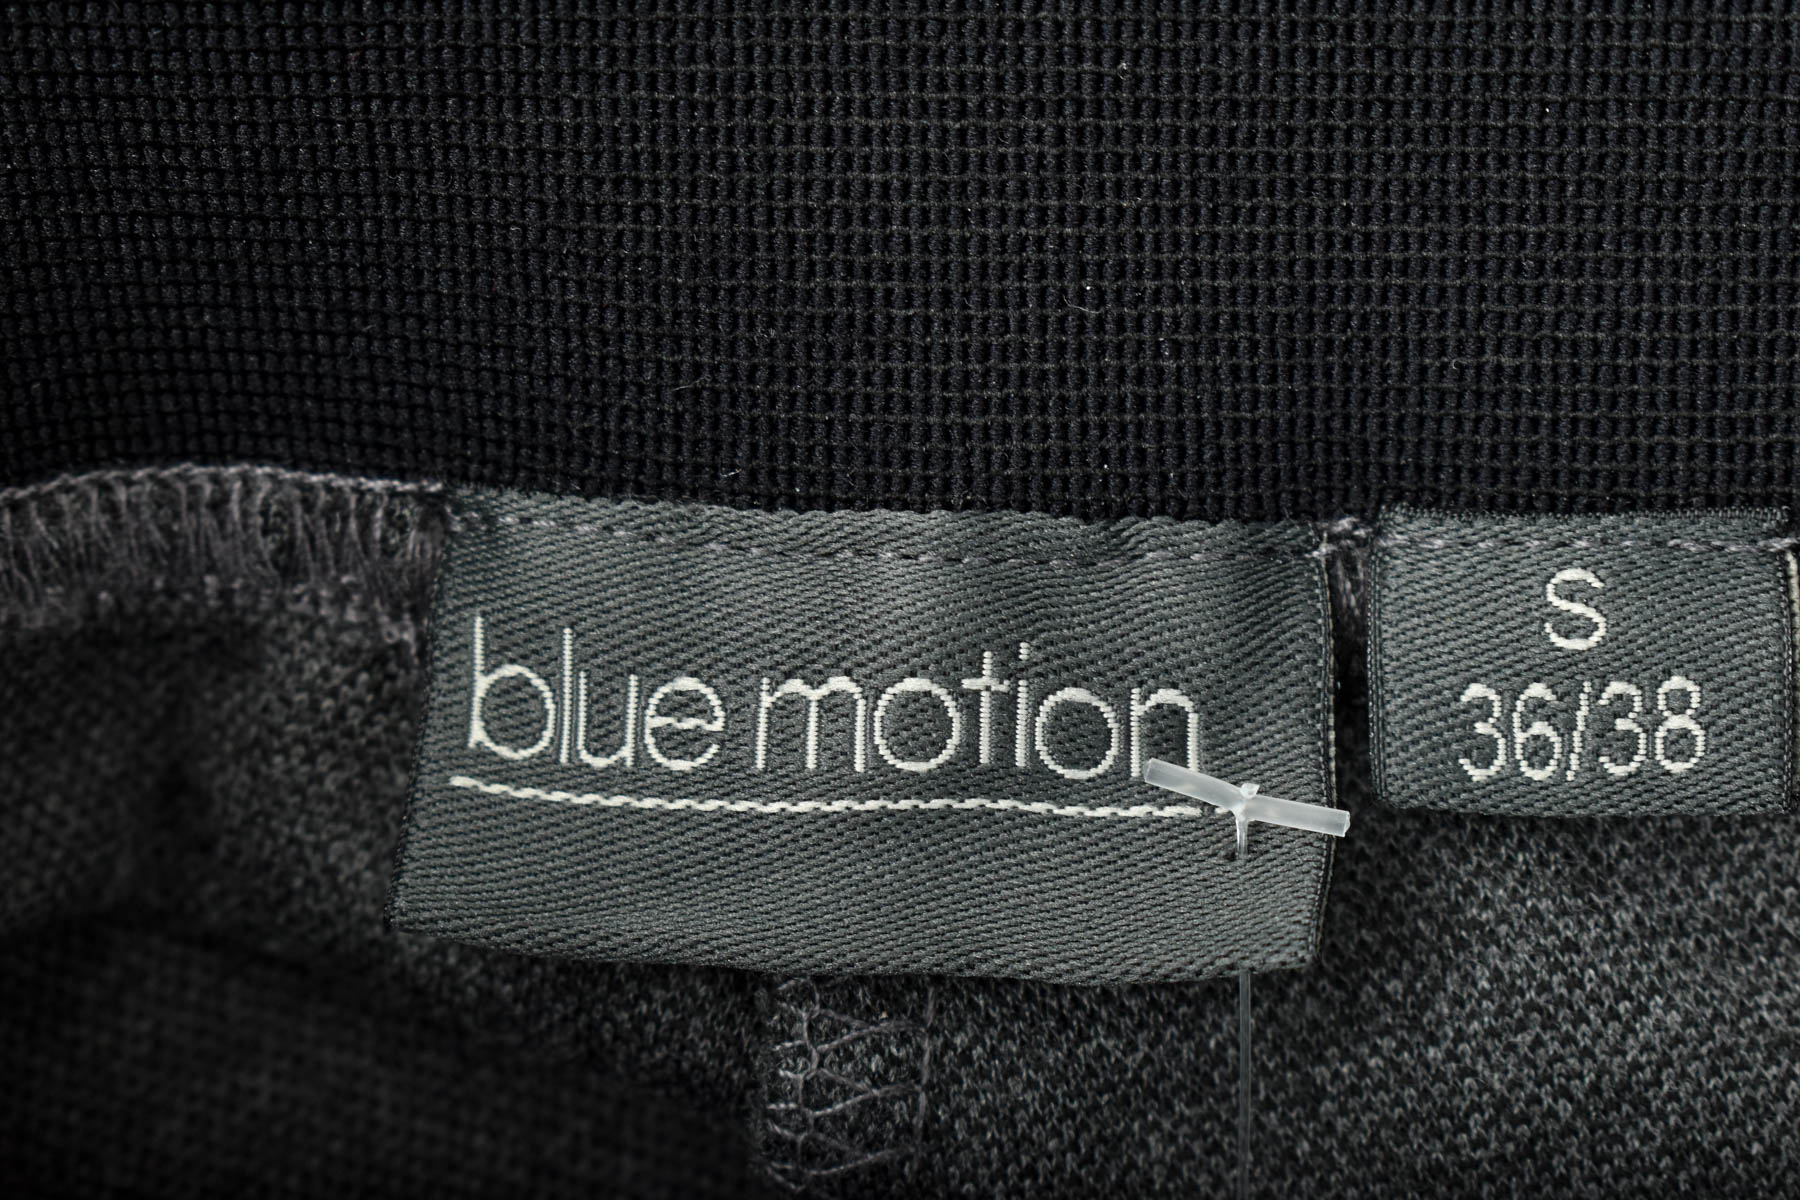 Women's trousers - Blue Motion - 2